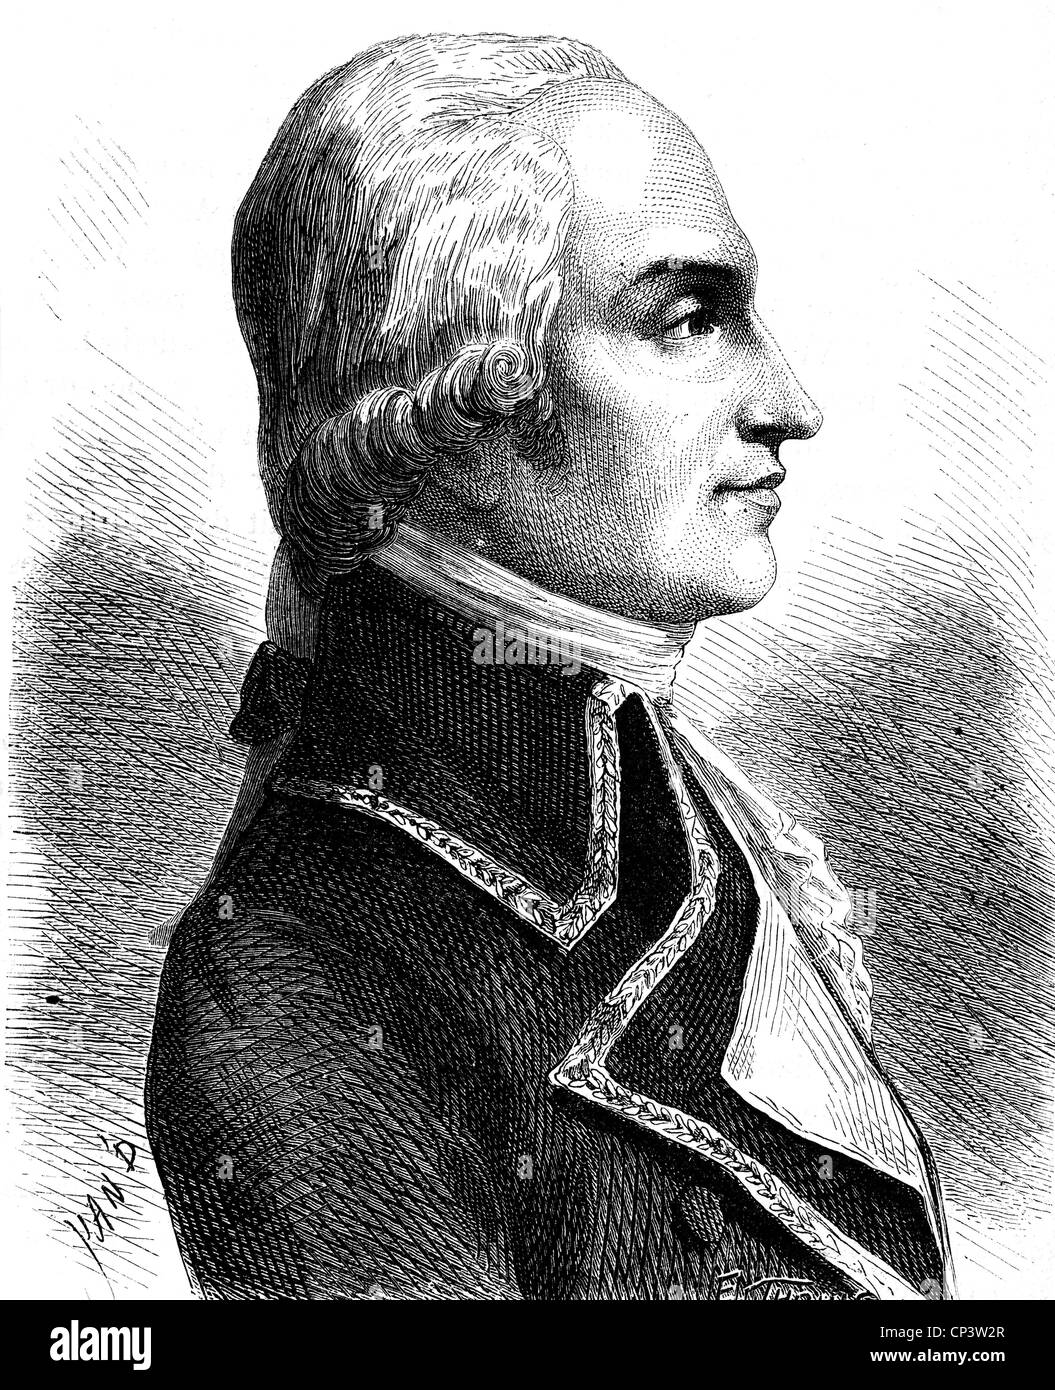 Biron, Armand-Louis de Gontaut, duca di, 13.4.1747 - 31.12.1793, generale francese, ritratto, incisione in legno, 19th secolo, Foto Stock